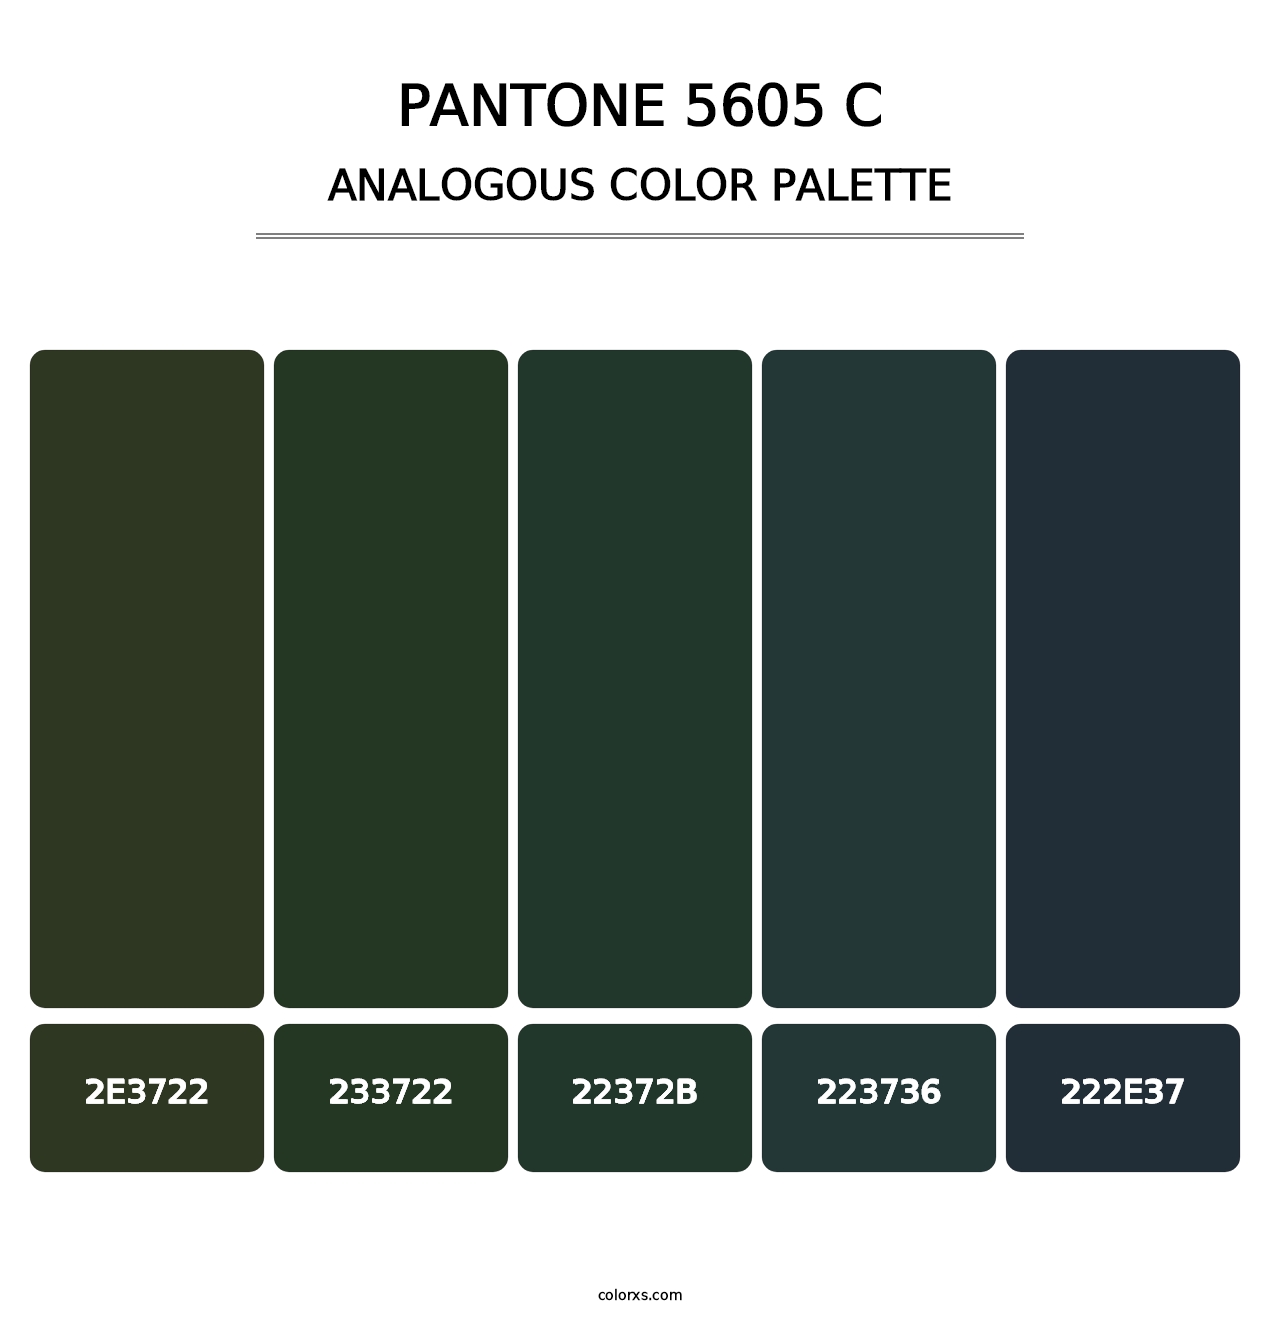 PANTONE 5605 C - Analogous Color Palette